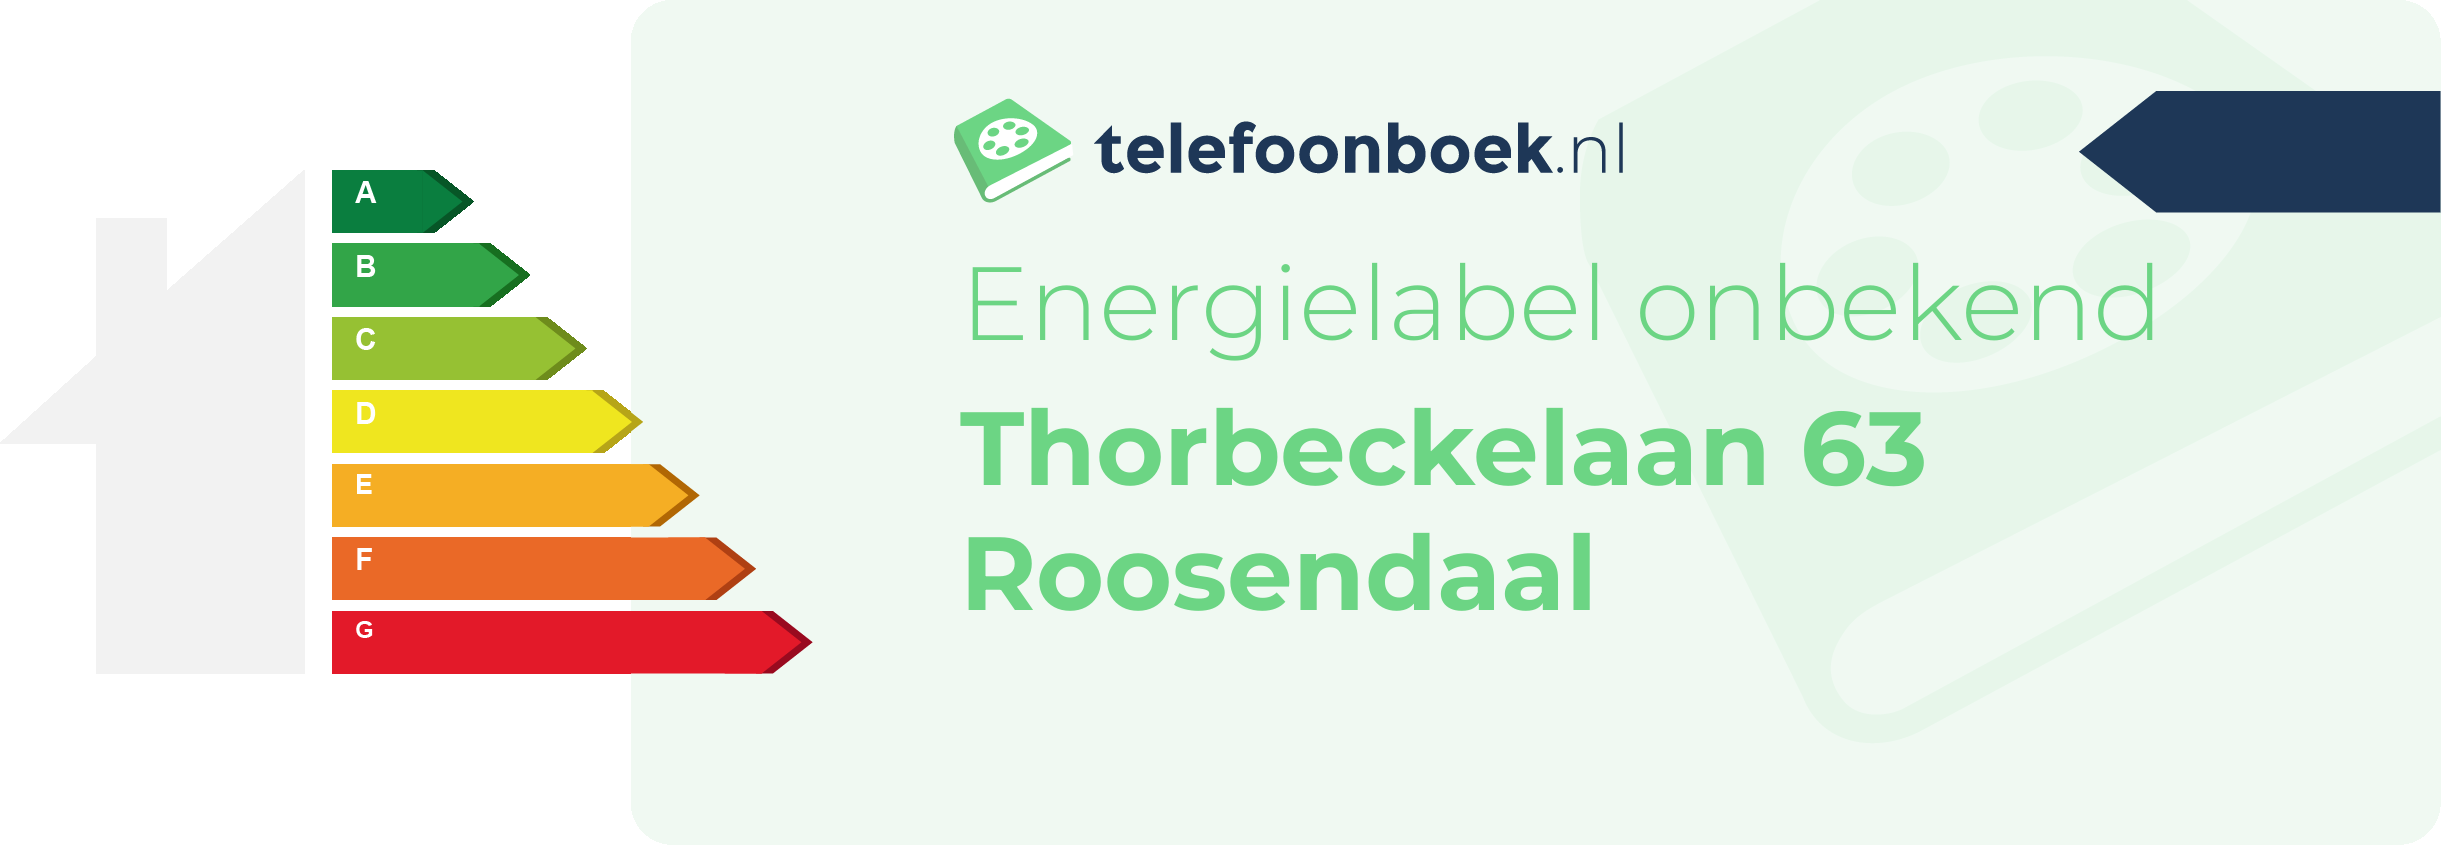 Energielabel Thorbeckelaan 63 Roosendaal